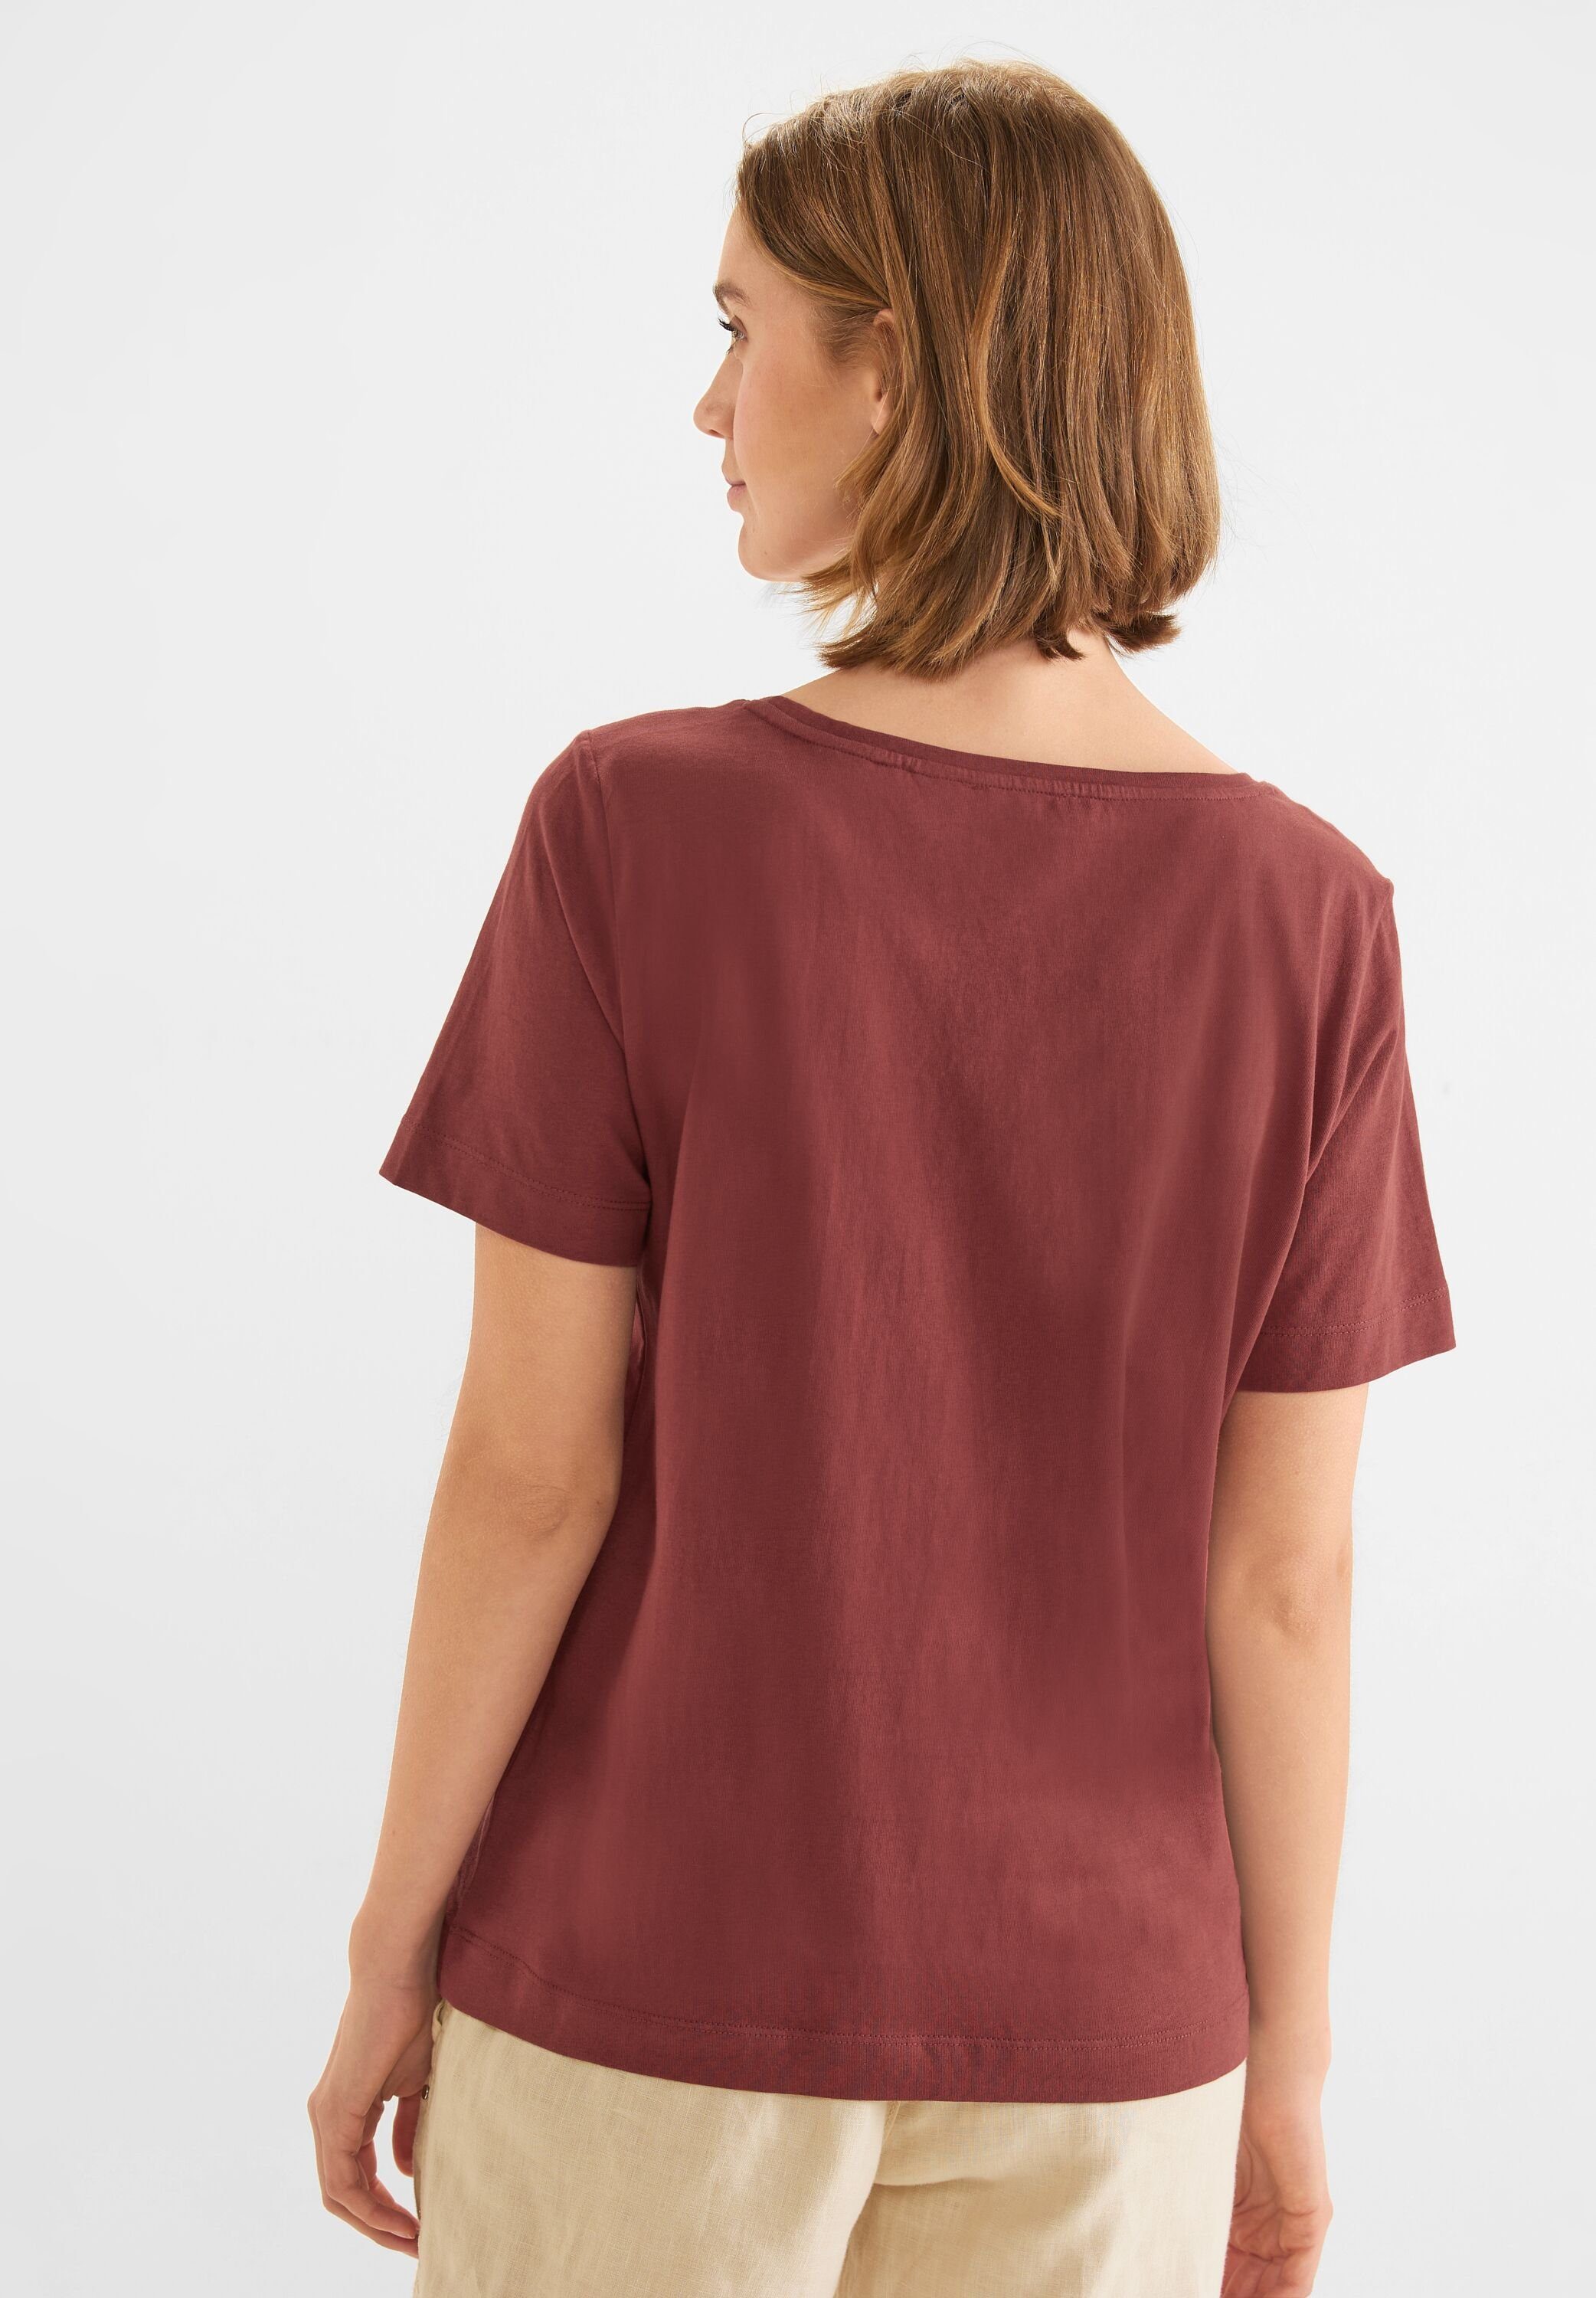 dark ONE T-Shirt aus foxy STREET Baumwolle red reiner